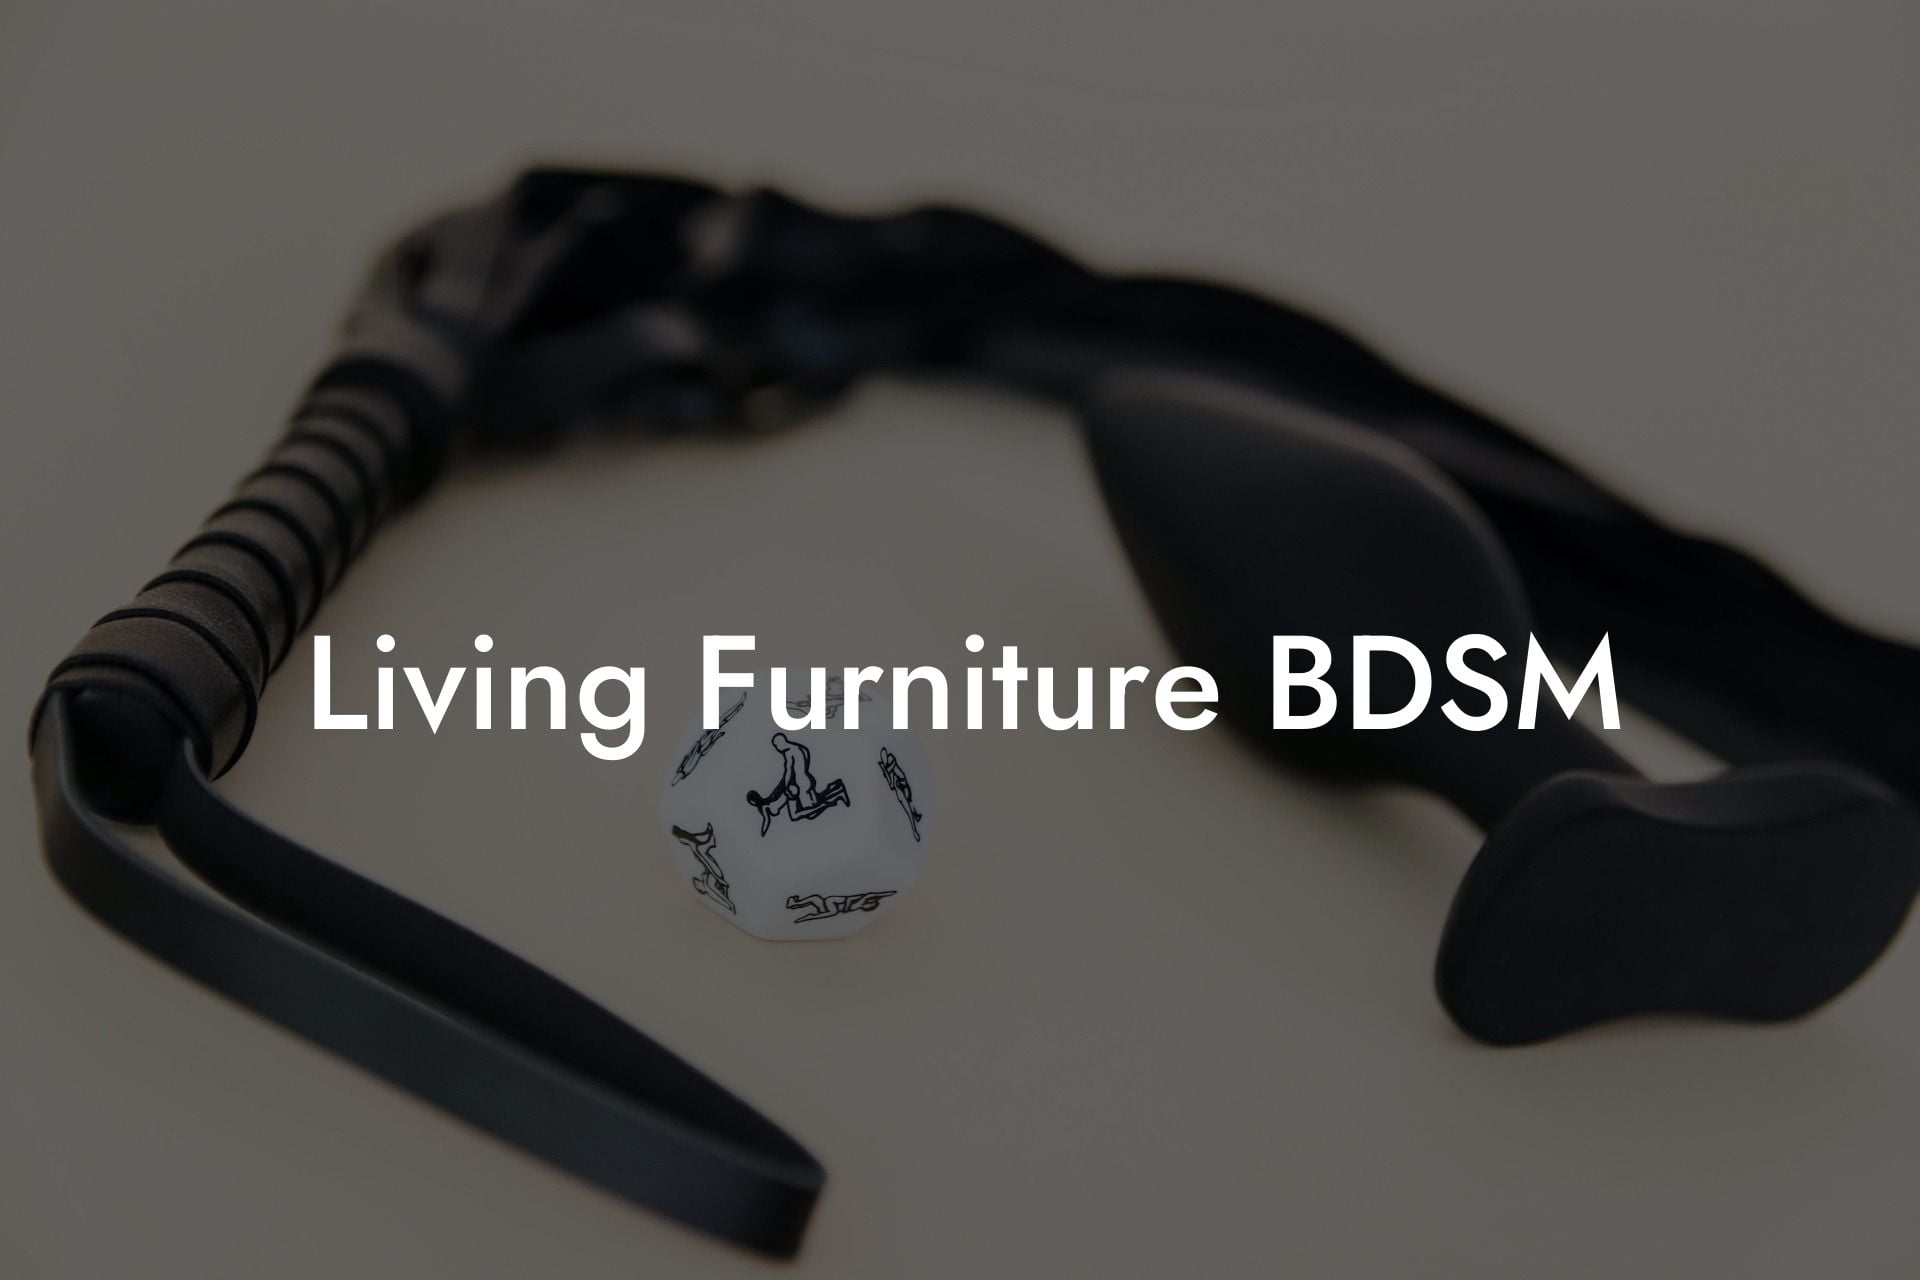 Living Furniture BDSM